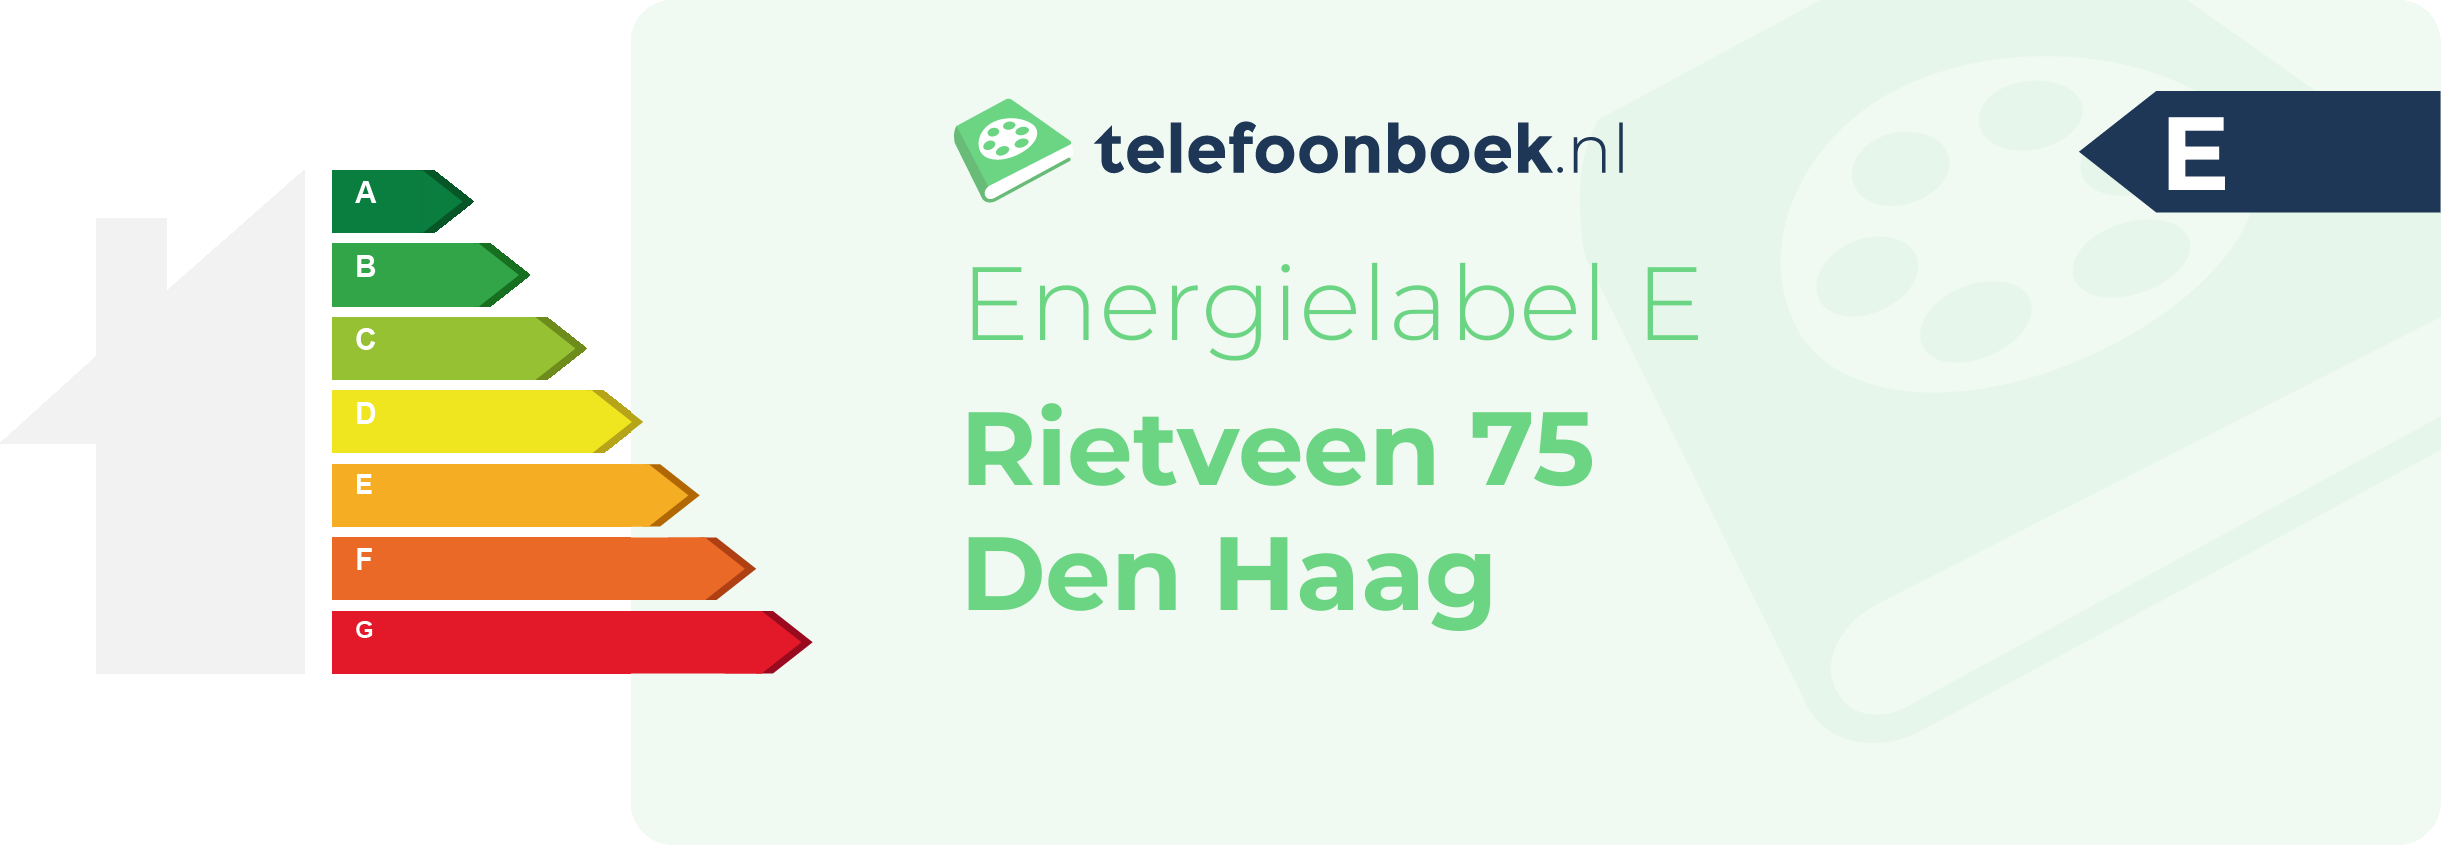 Energielabel Rietveen 75 Den Haag